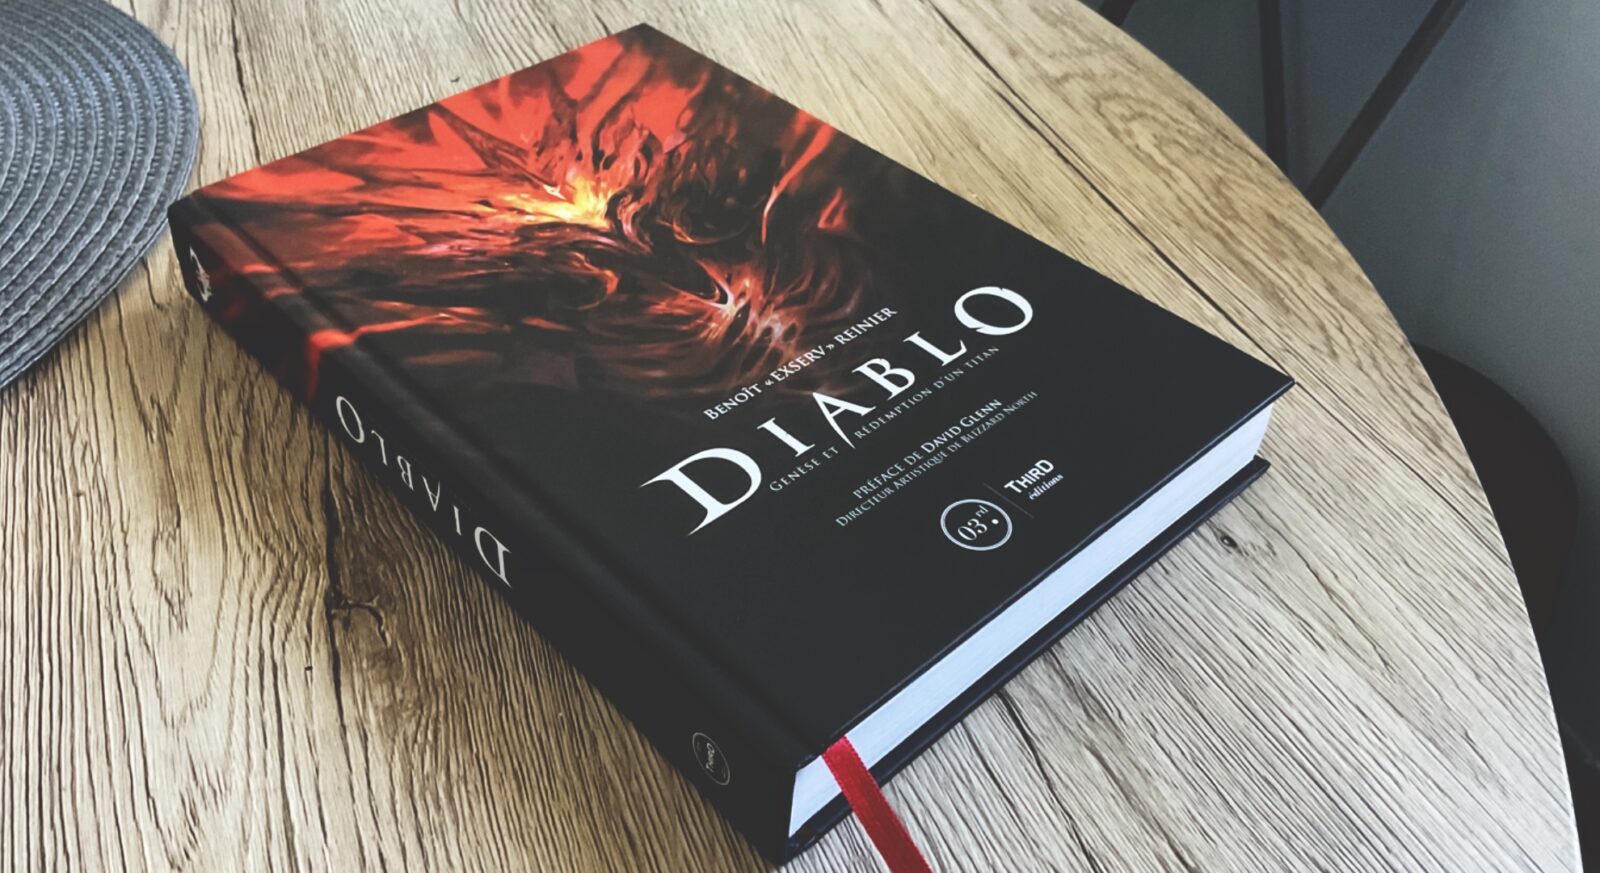 Diablo Genèse et rédemption d'un titan - Critique : Une vraie bible sur la saga